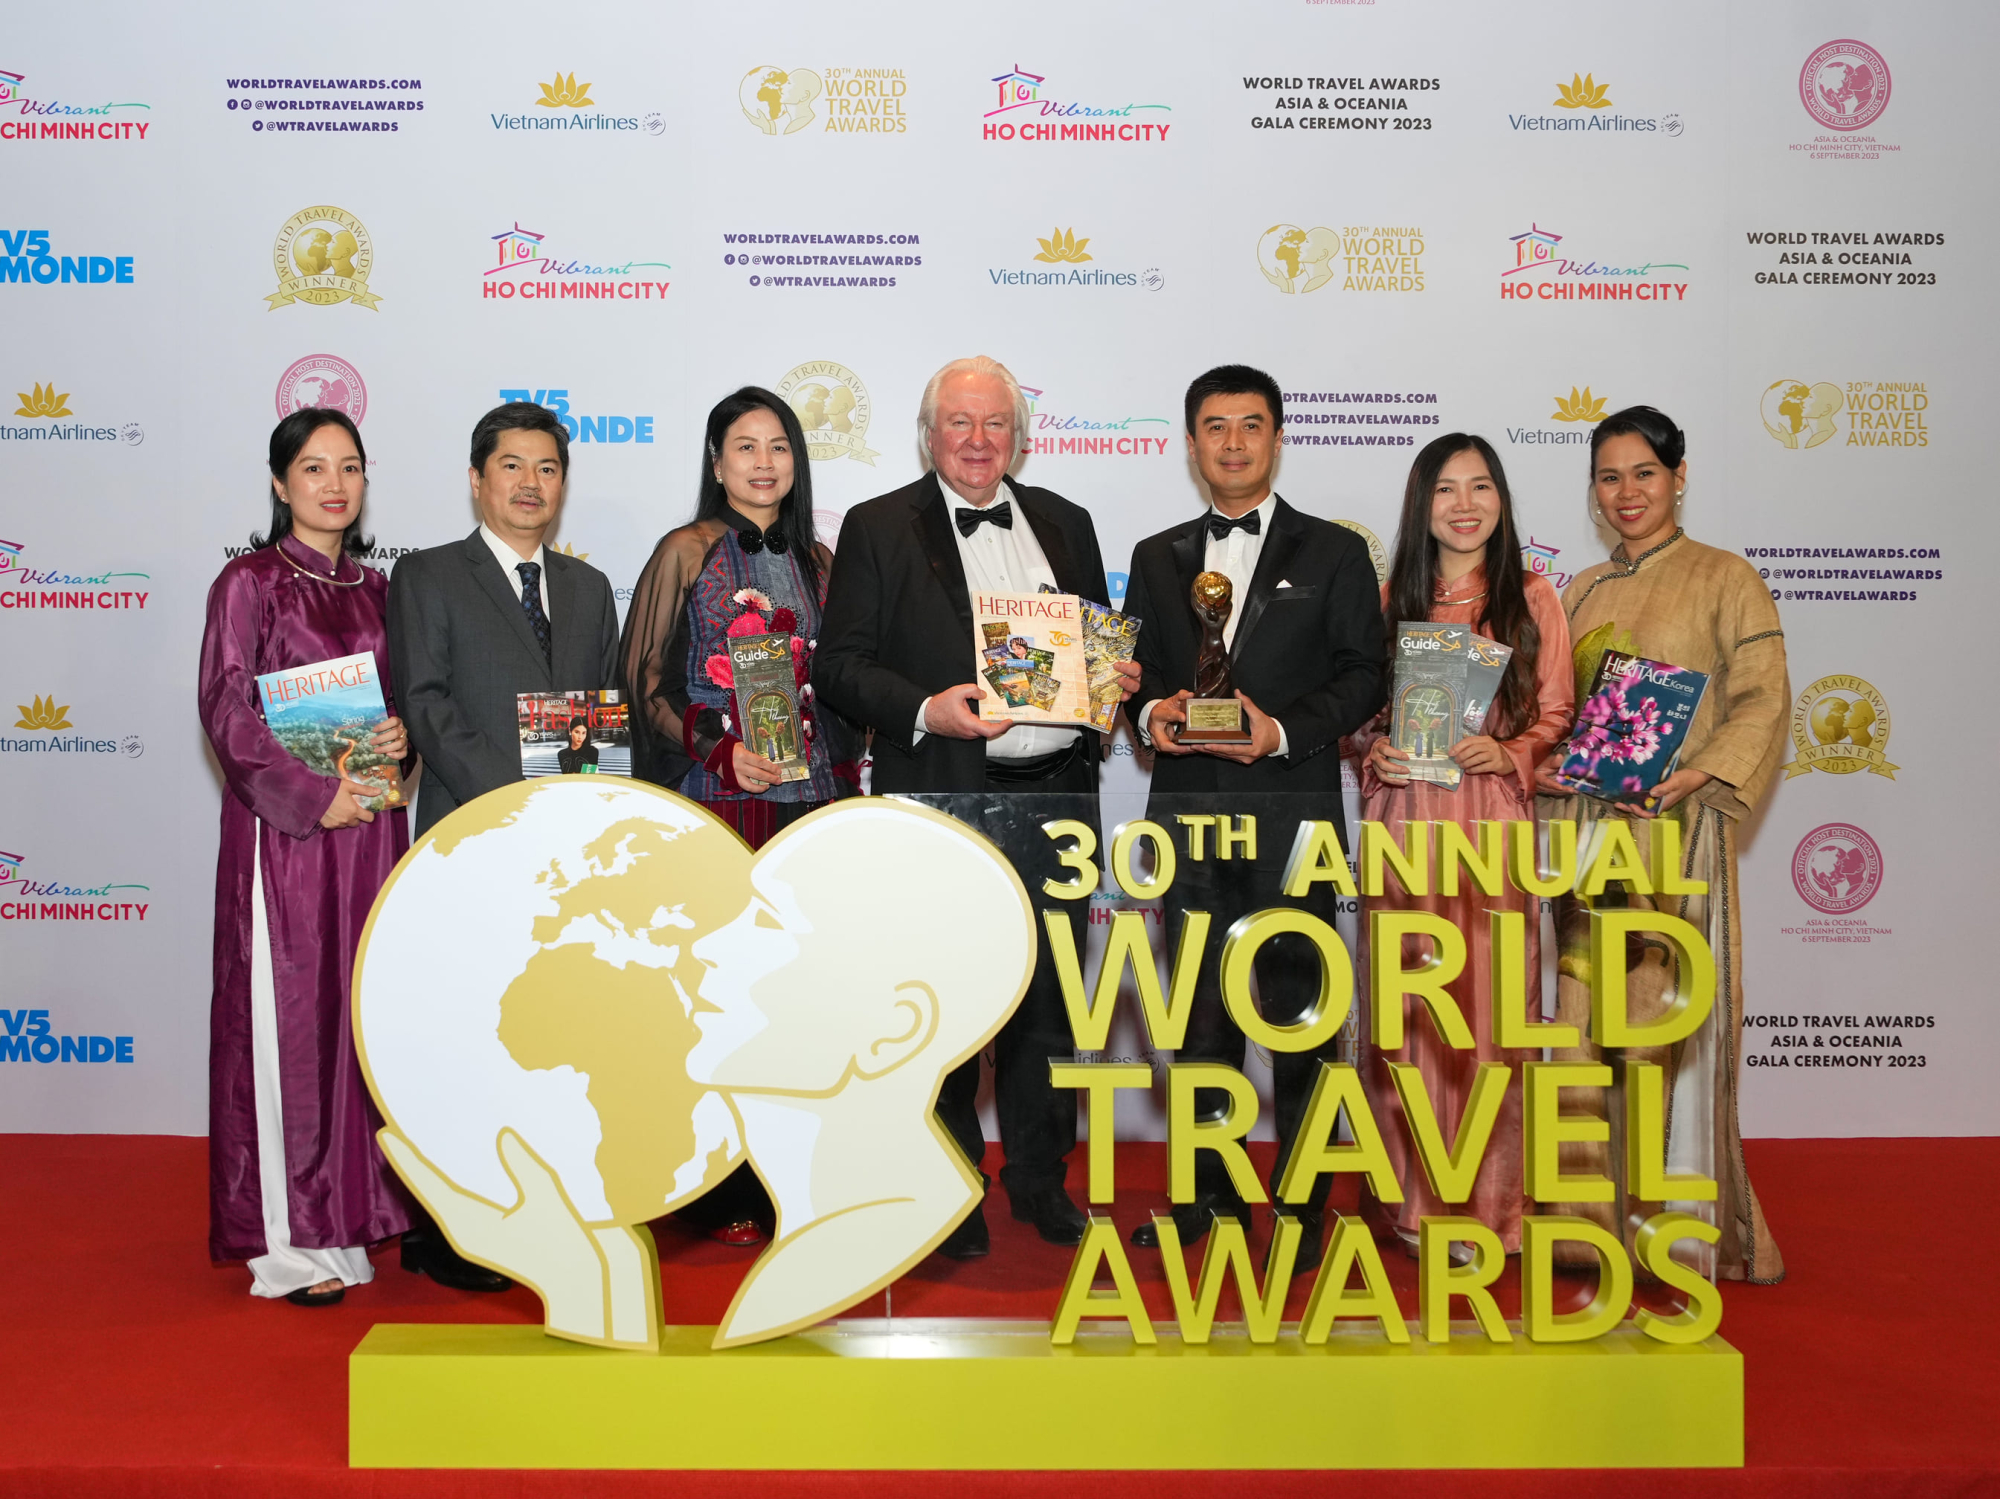 vietnam airlines nhan bon giai thuong tai world travel awards khu vuc chau a va chau dai duong 2023 hinh 4